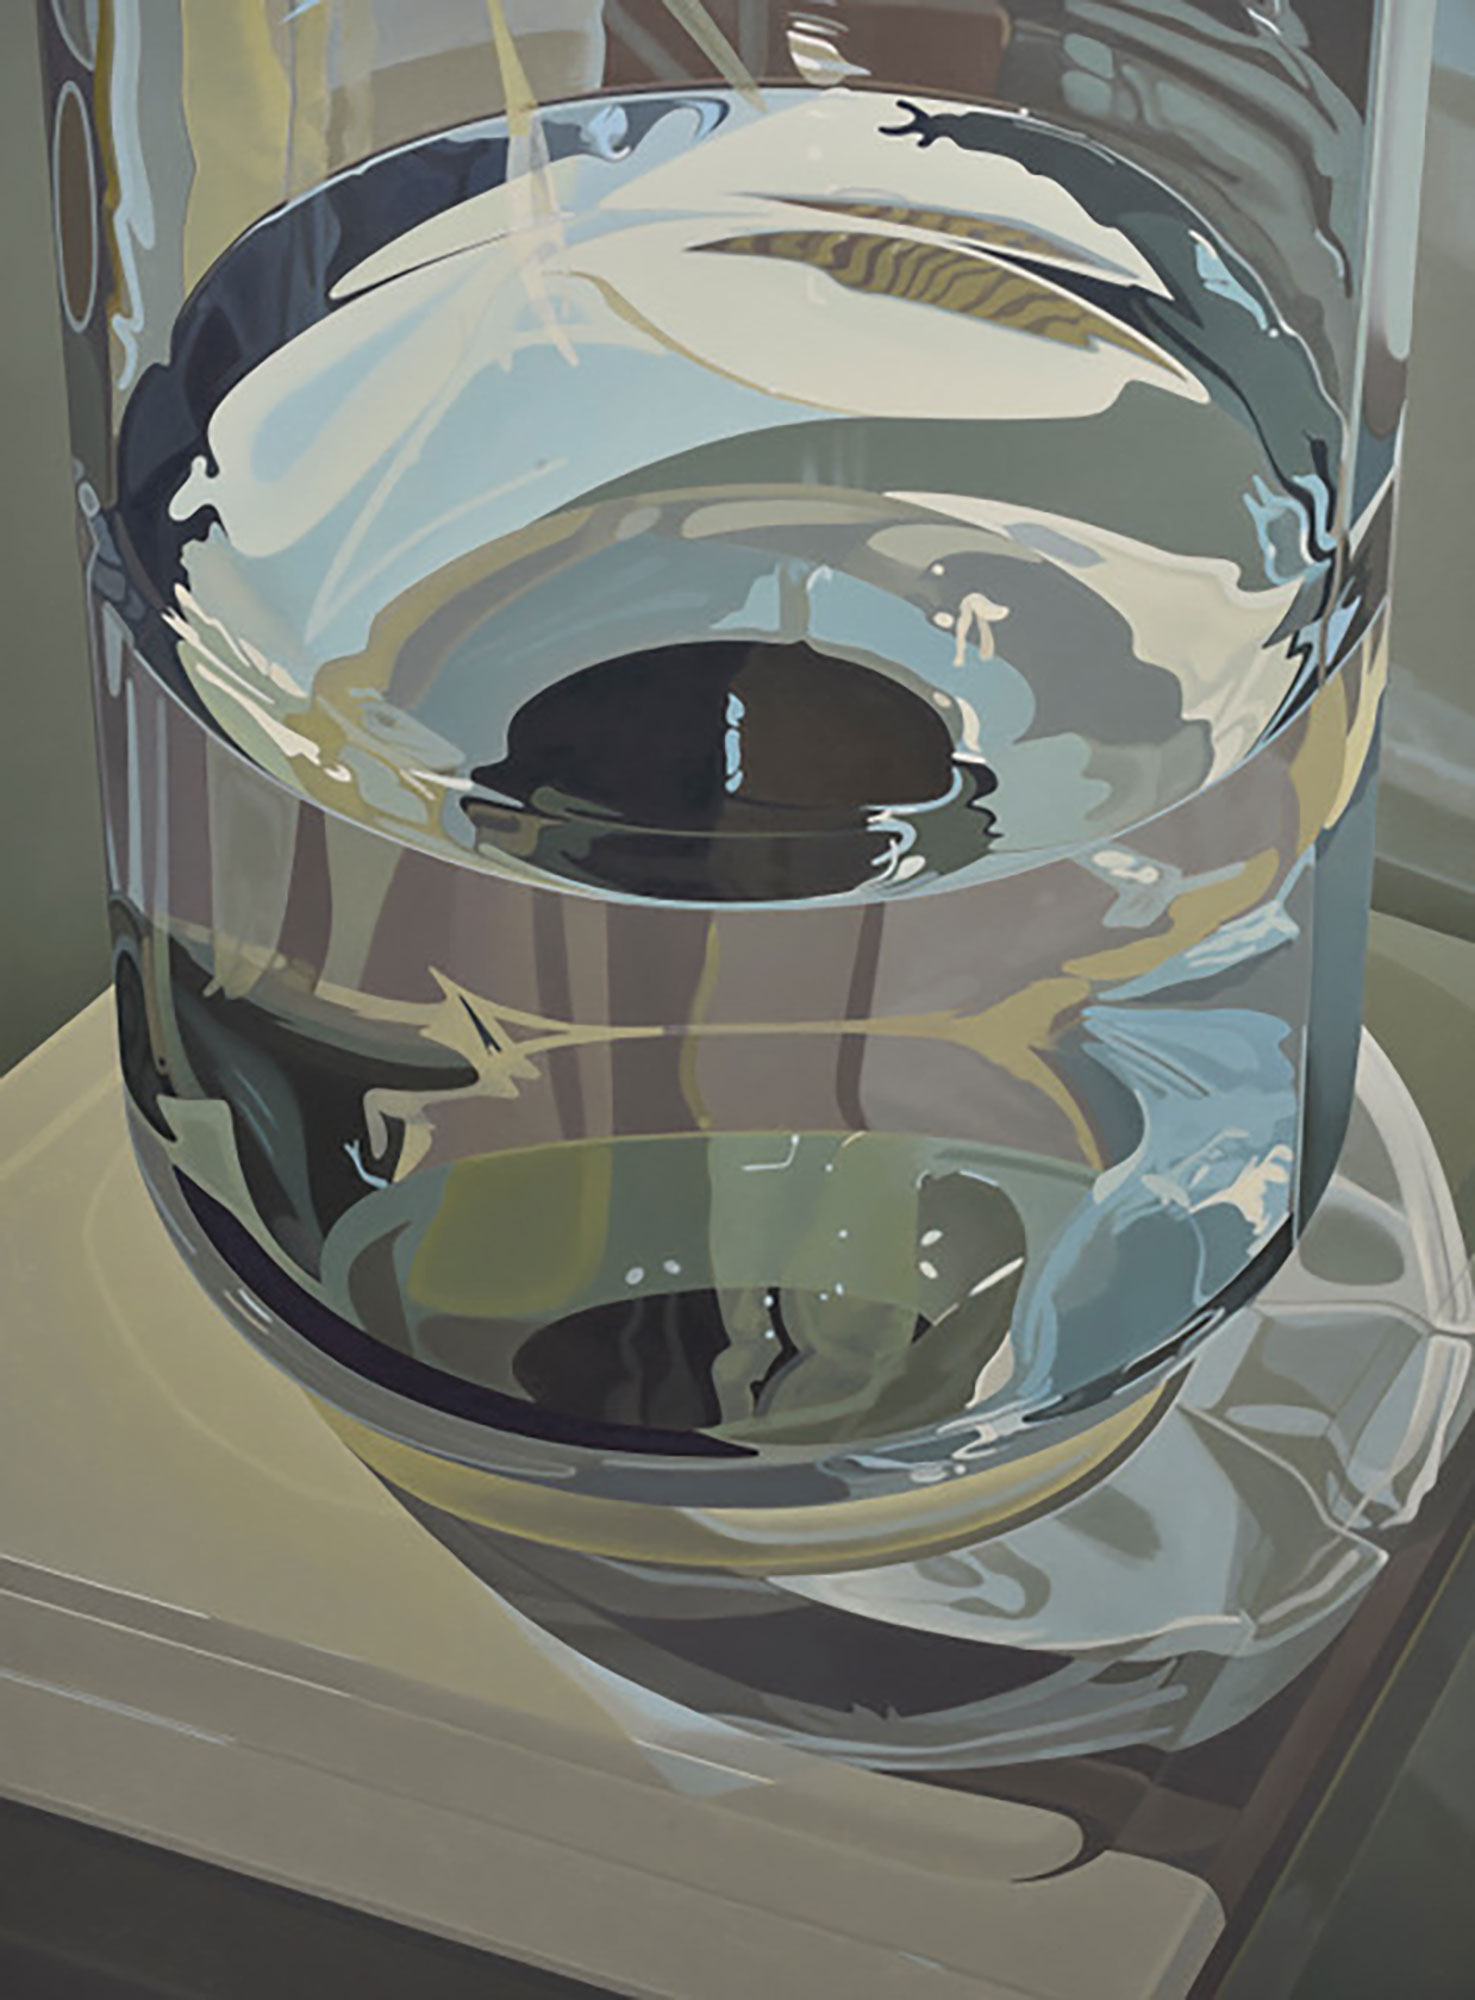 Sandra Mendelsohn Rubin / 
Water Jug #2, 2022 / 
oil on polyester / 
38 x 28 in. (96.5 x 71.1 cm)